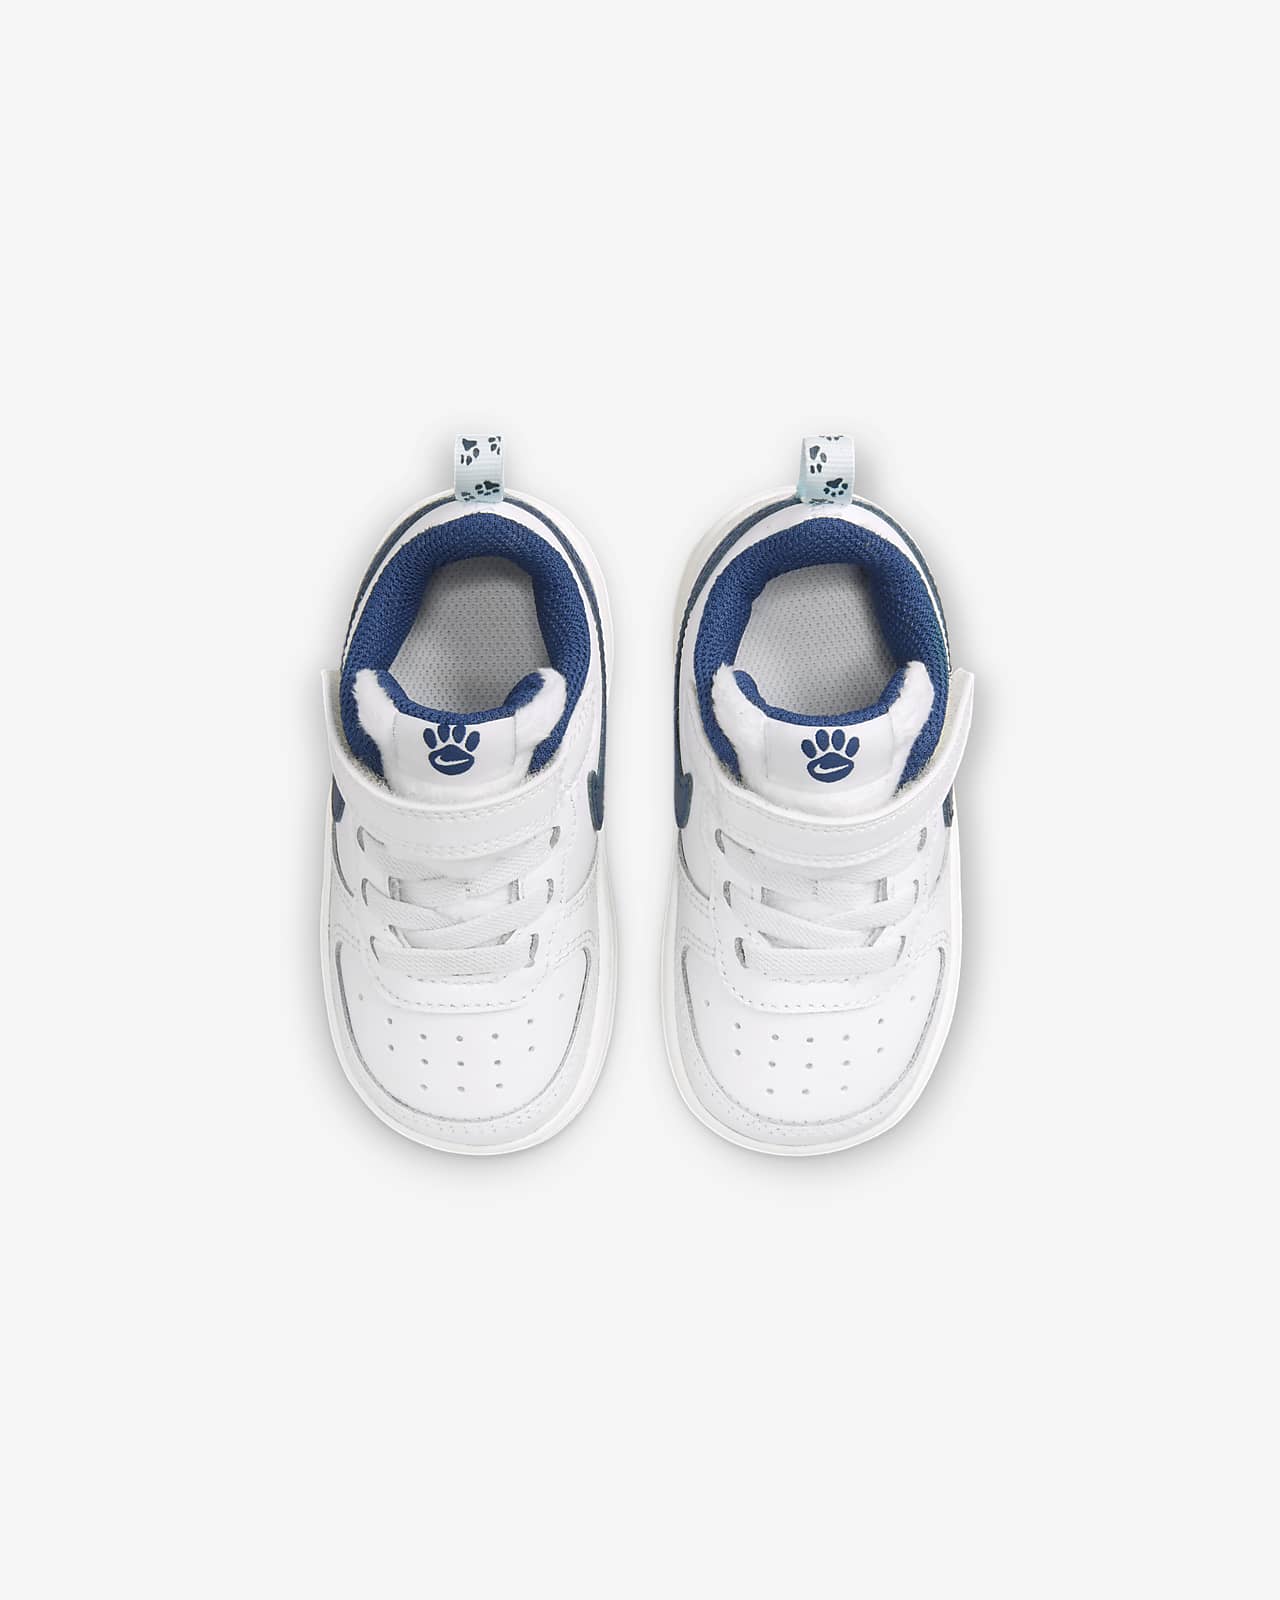 Nike Court Borough Low 2 SE Baby/Toddler Shoes. Nike LU